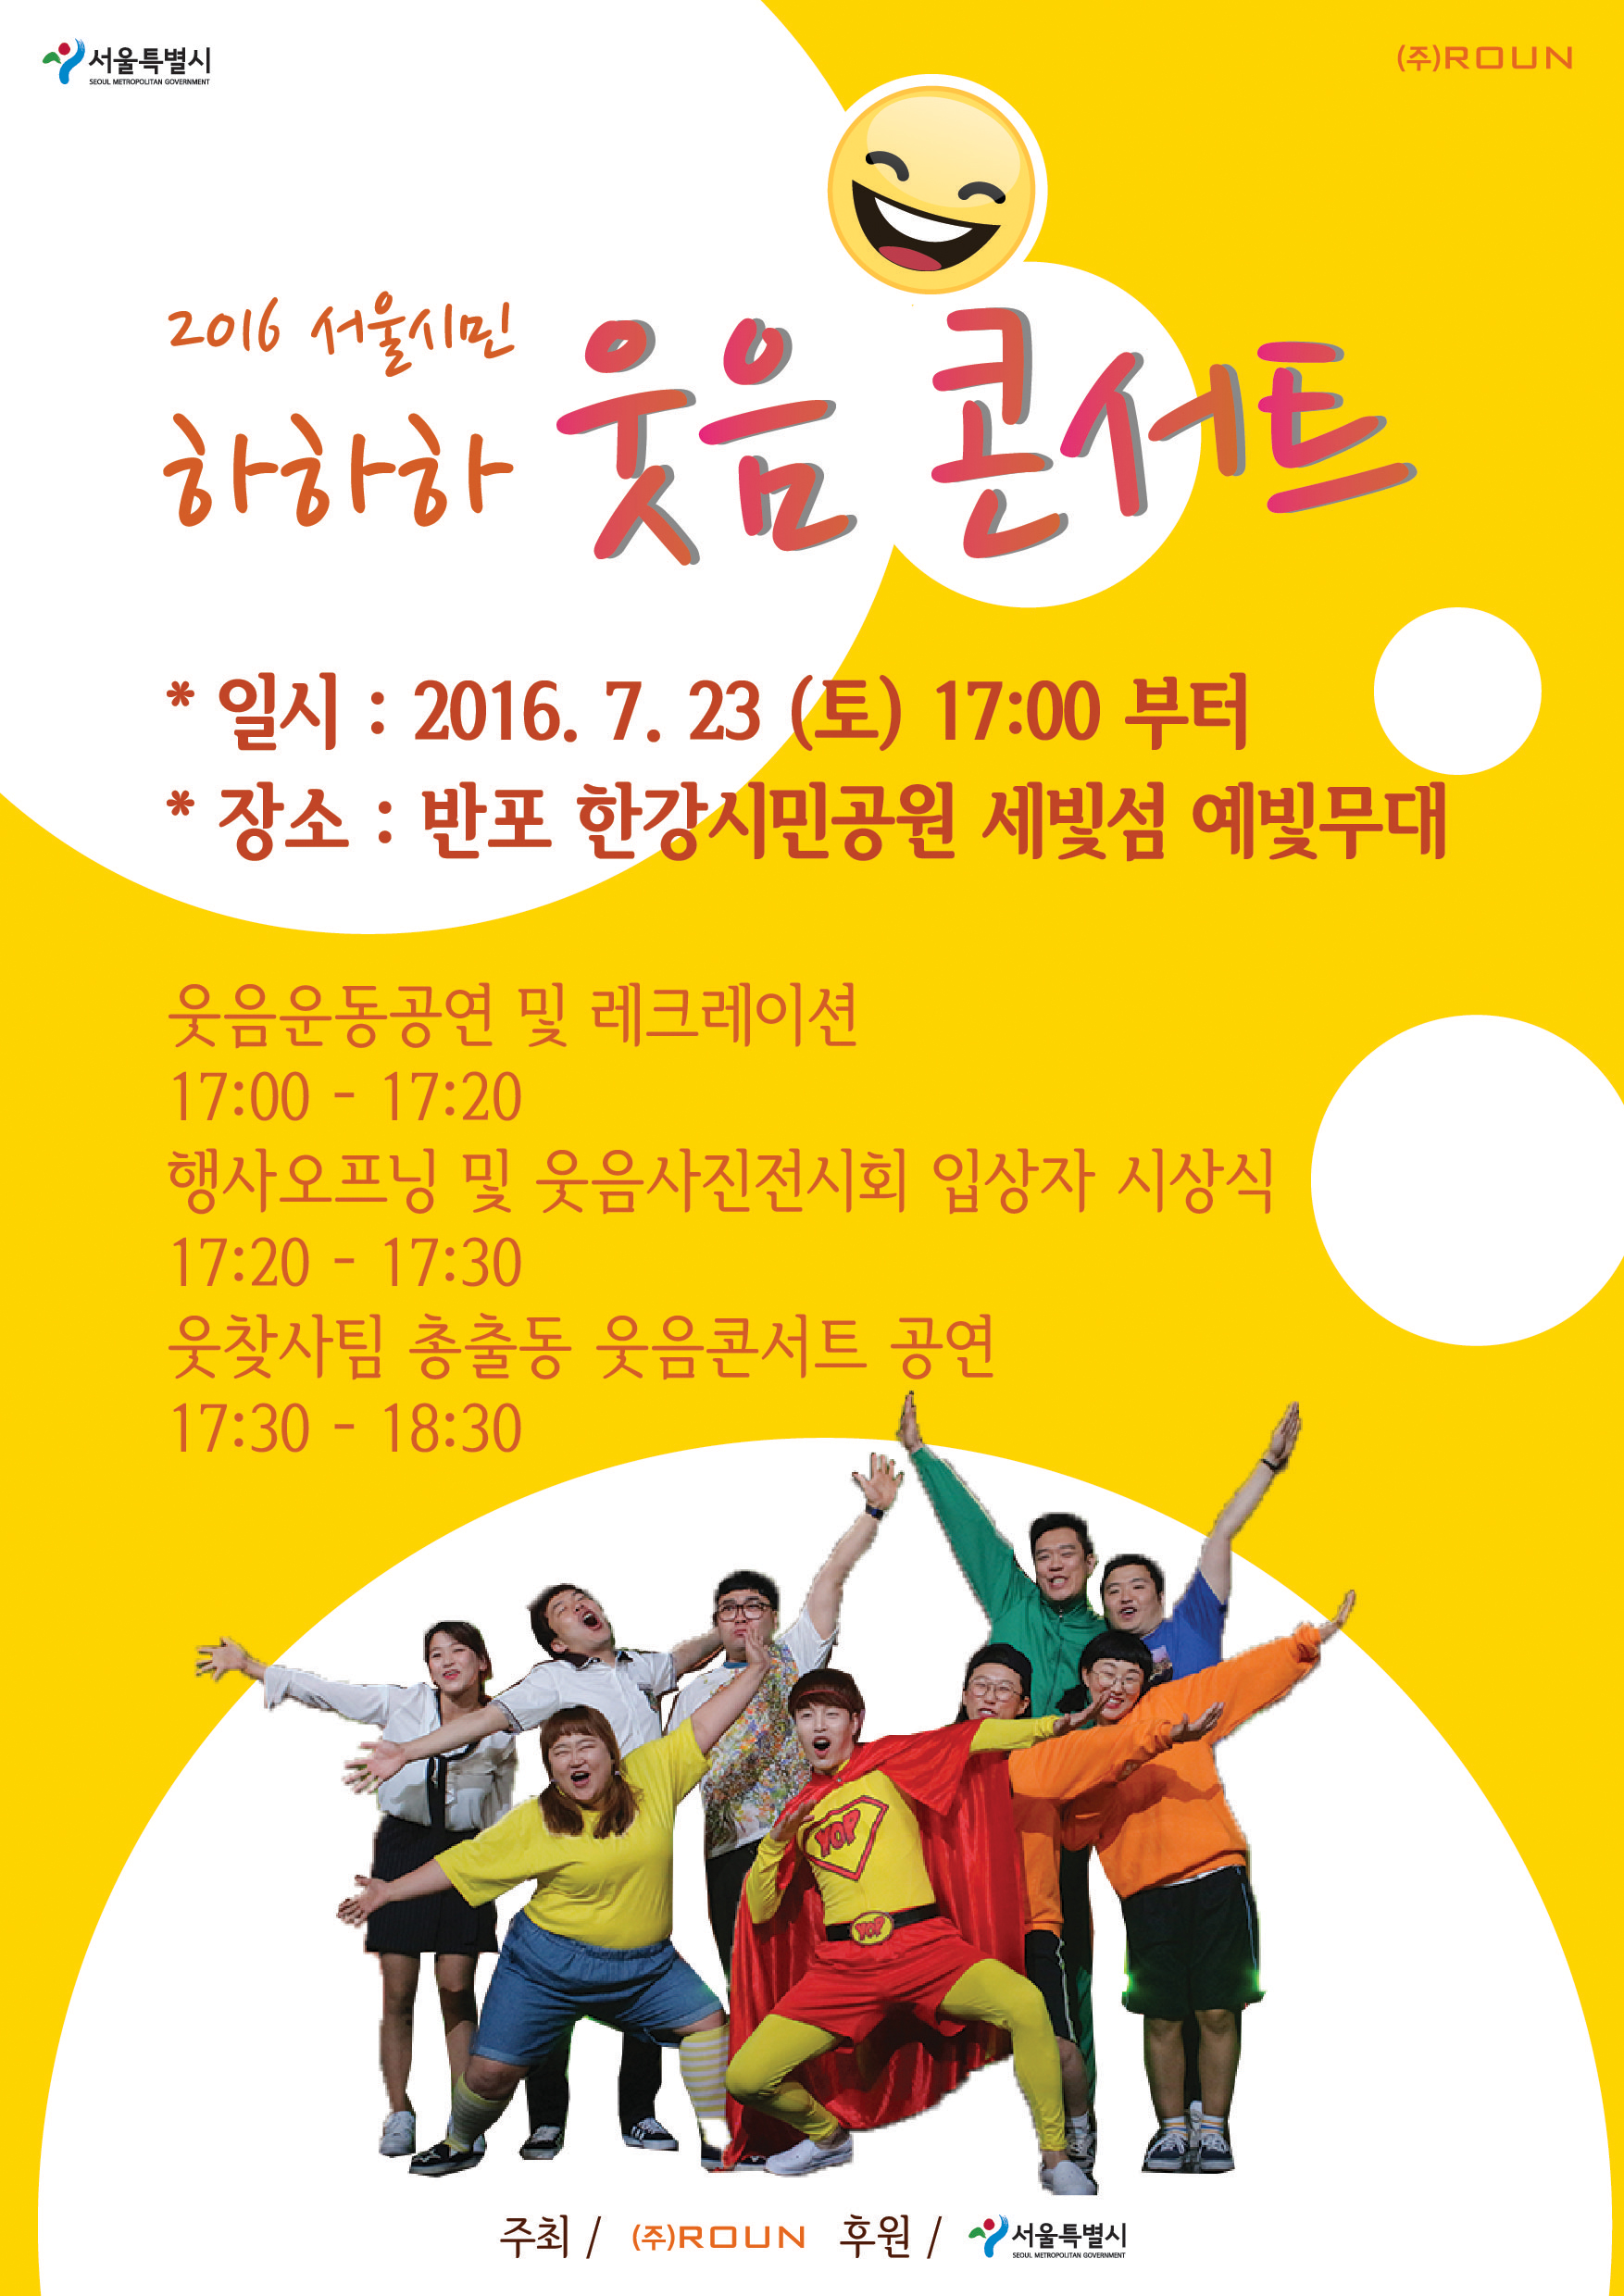 문화기획사 로운, 서울특별시 후원으로 ‘웃음콘서트’ 개최